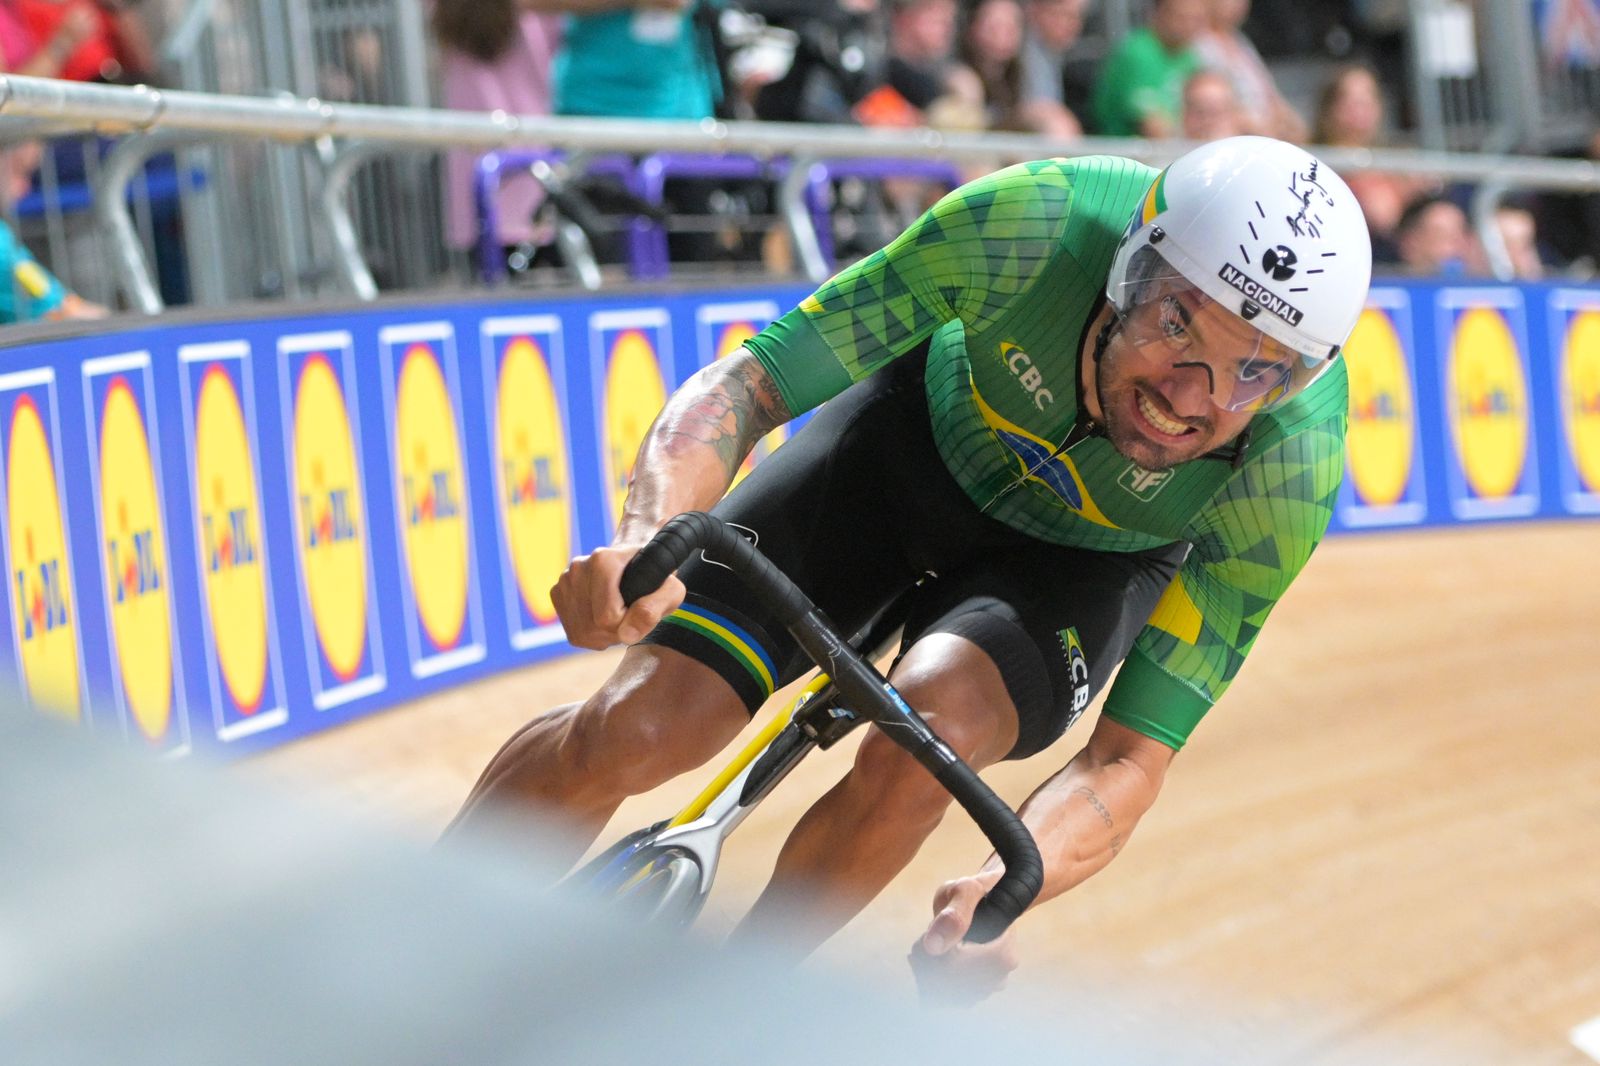 Brasileiro é bronze no Campeonato Mundia de Ciclismo, na Escócia - Foto: Reprodução/ JB-Benavent/ CBC